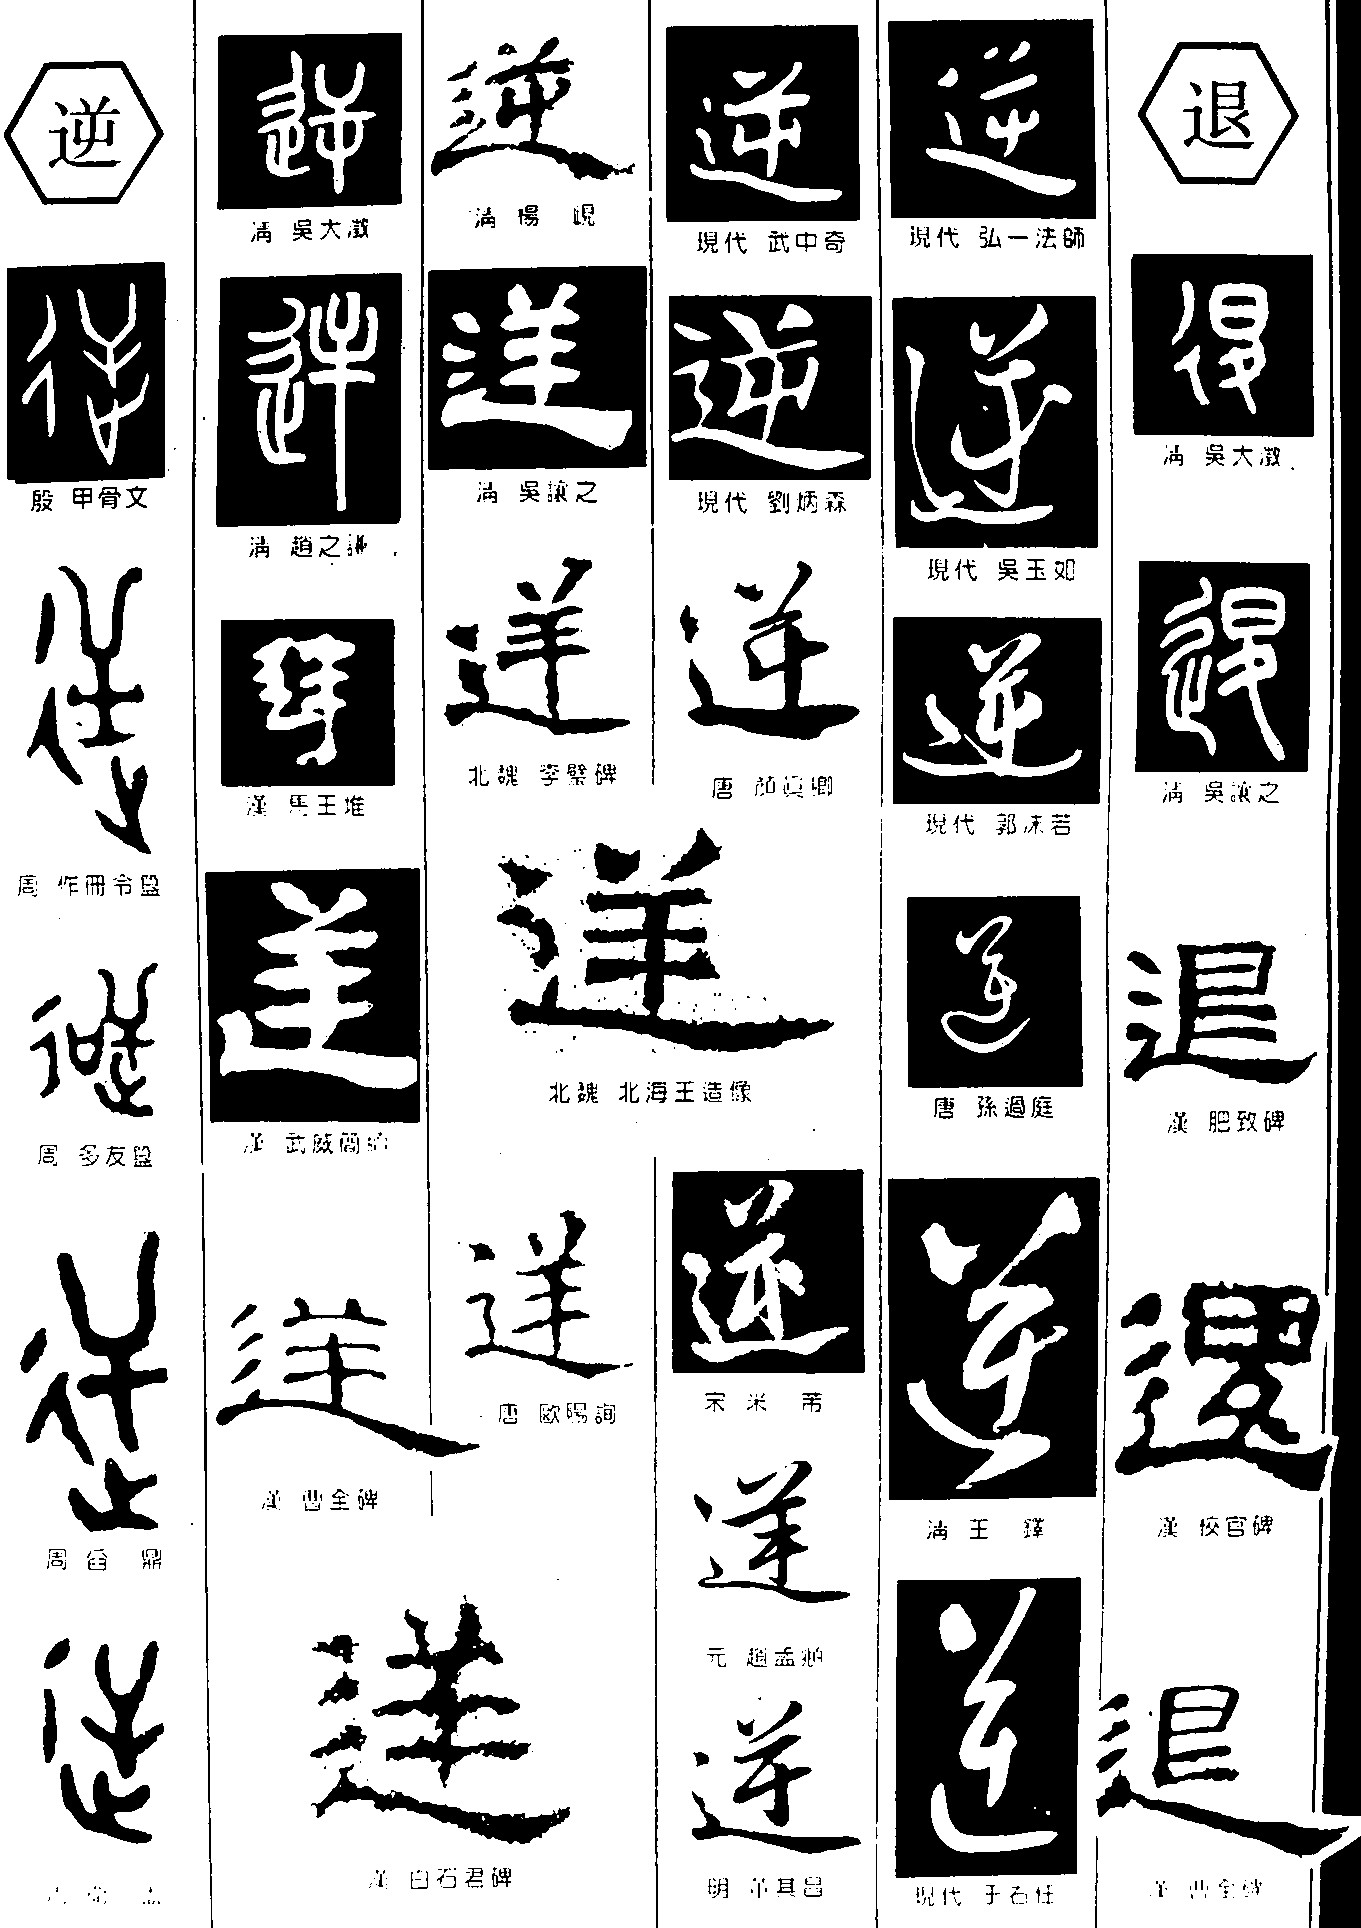 逆退_书法字体_字体设计作品-中国字体设计网_ziti.cndesign.com